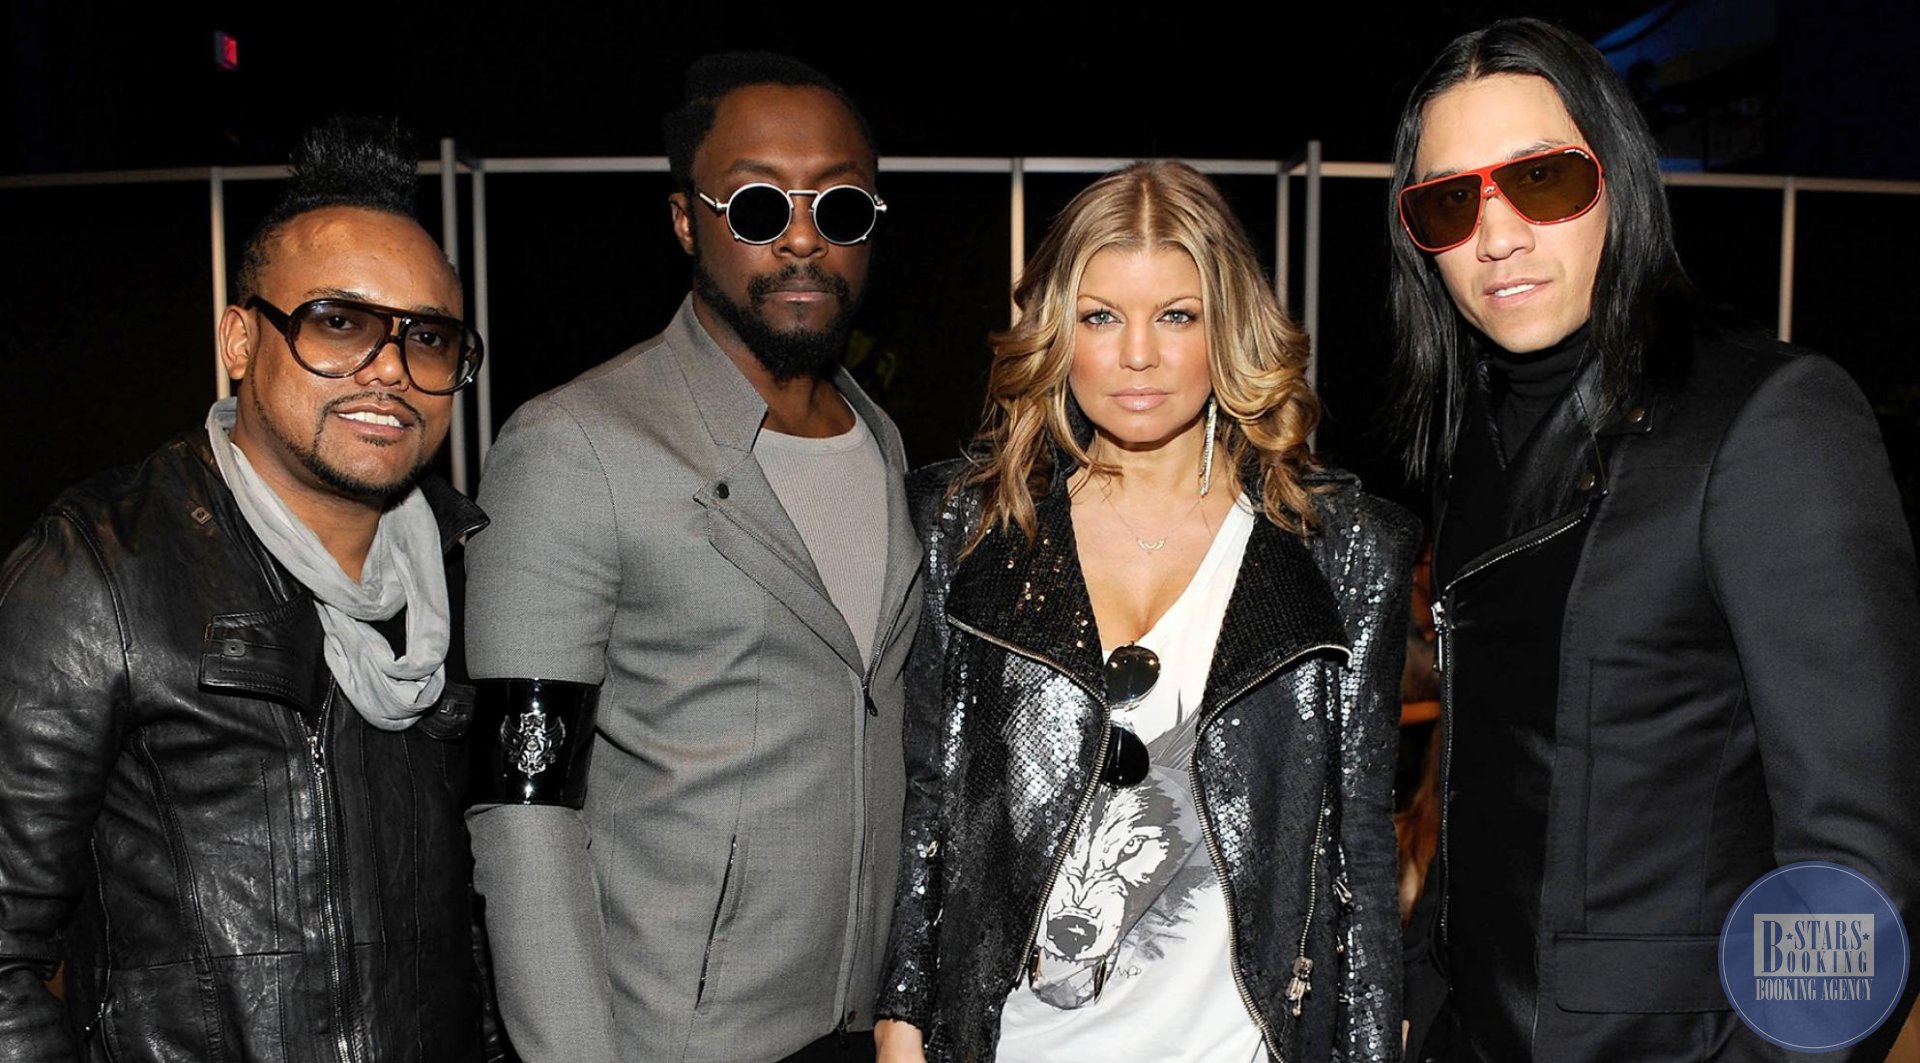 The Black Eyed Peas - Концертное агентство Booking Stars Ltd. букинг  артистов - райдер - контакты - цена выступления.